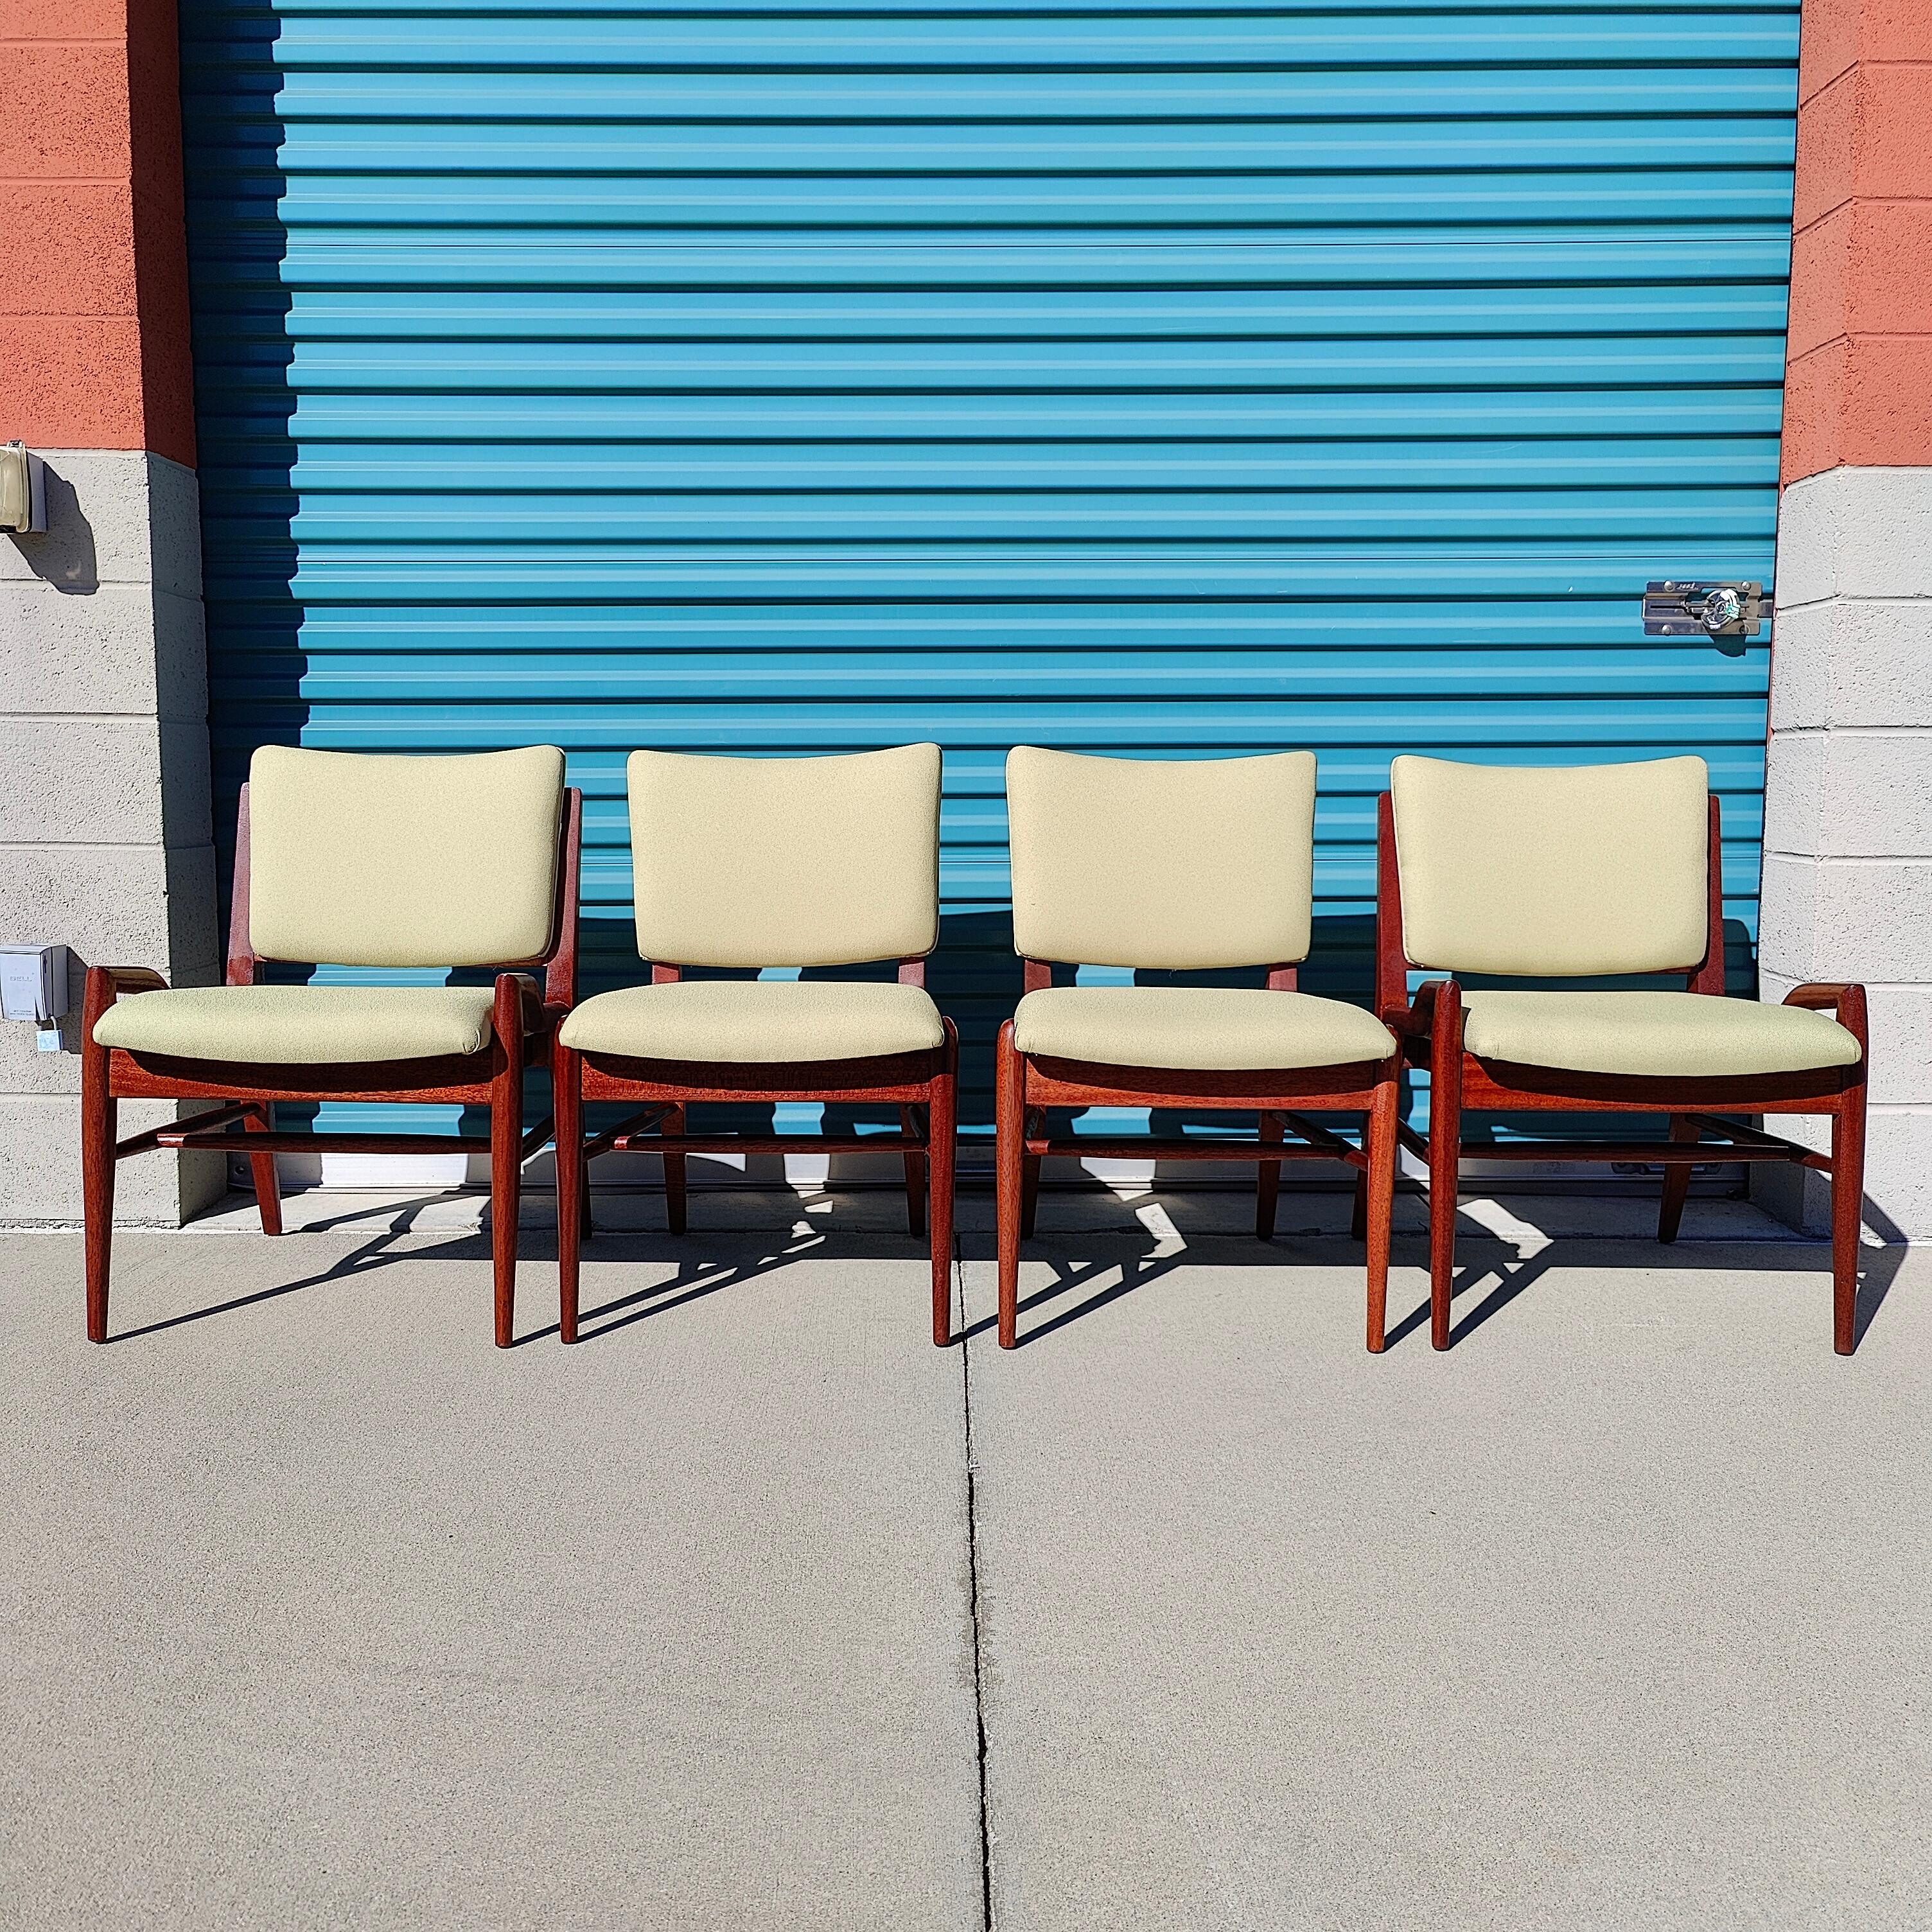 Un classique du design américain ; John Keal pour les chaises de salle à manger Brown Saltman x4. Ils présentent une belle finition acajou massif brillant avec un tissu classique vert pomme. Un contraste magnifique pour toute salle à manger ! La